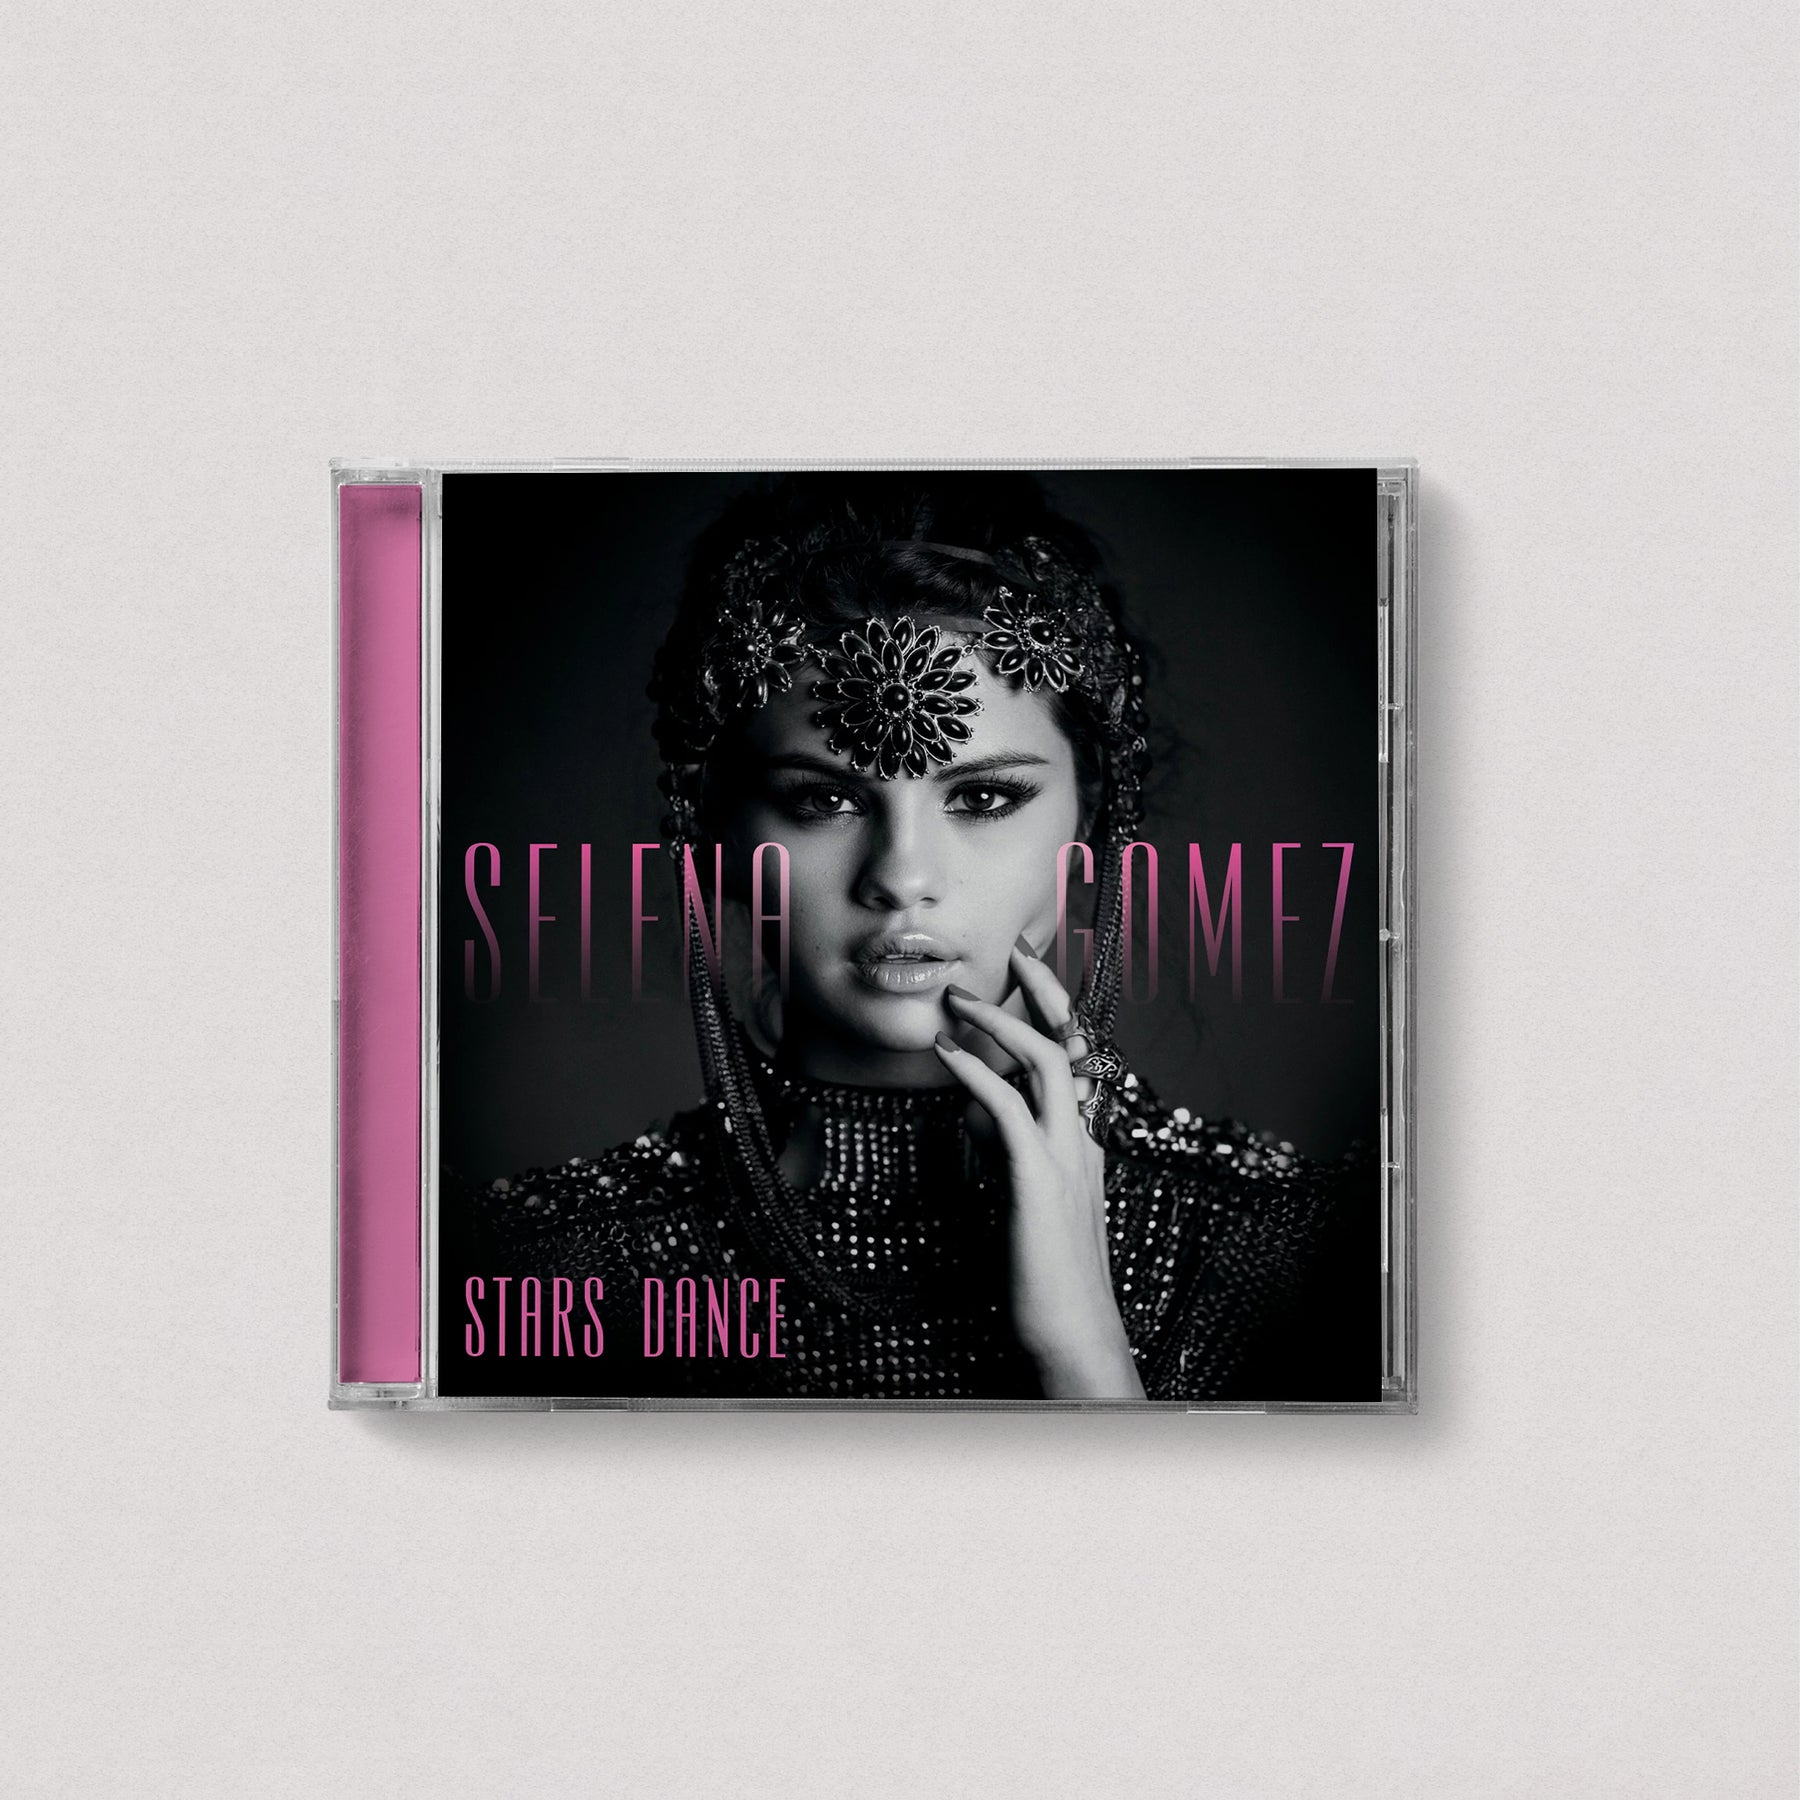 Selena Gomez - Stars Dance (Standard, CD)